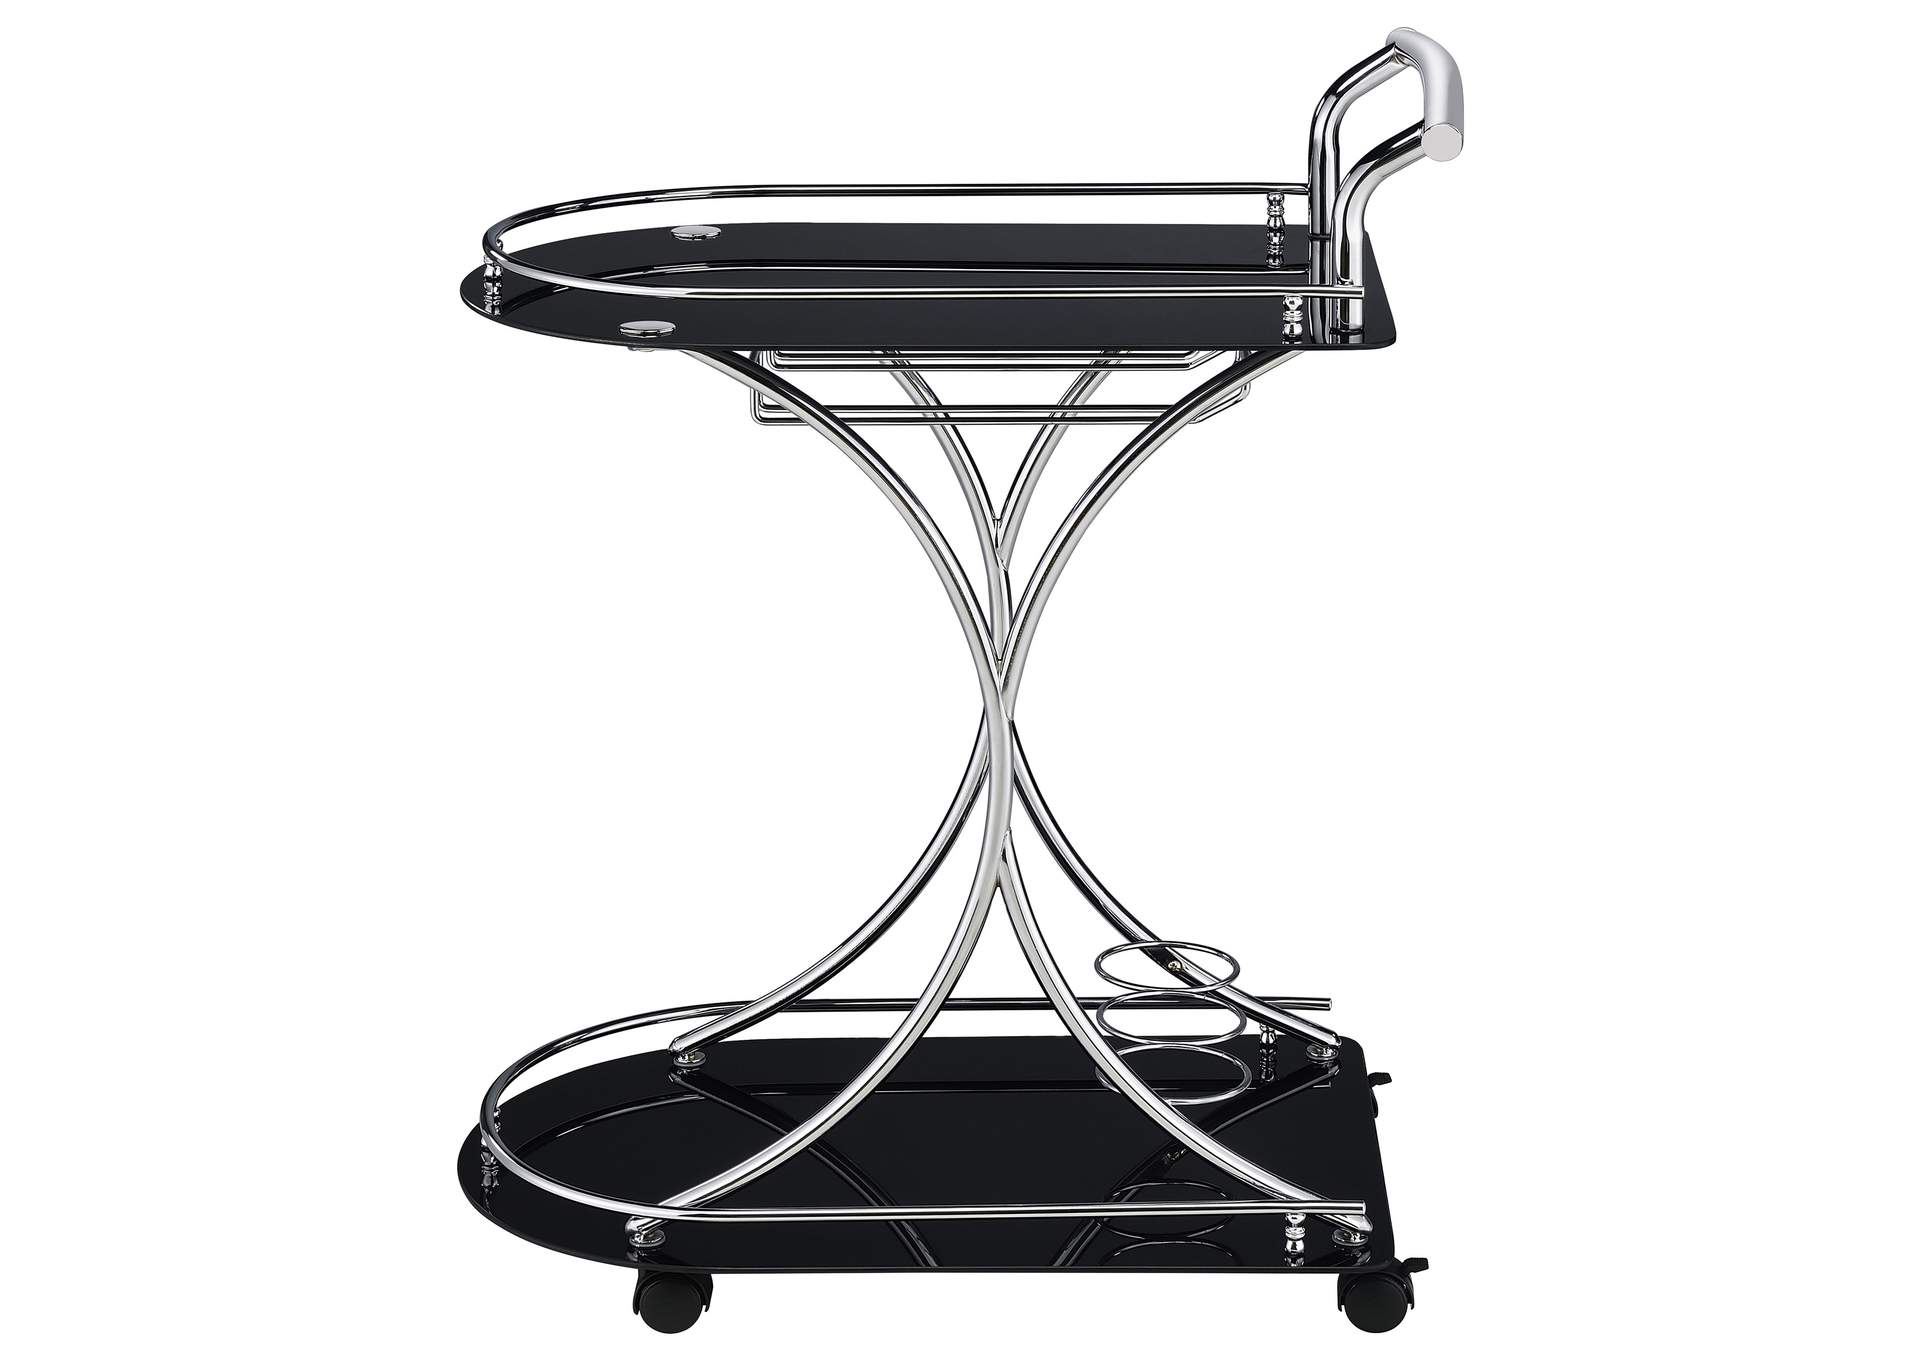 Elfman 2-shelve Serving Cart Chrome and Black,Coaster Furniture